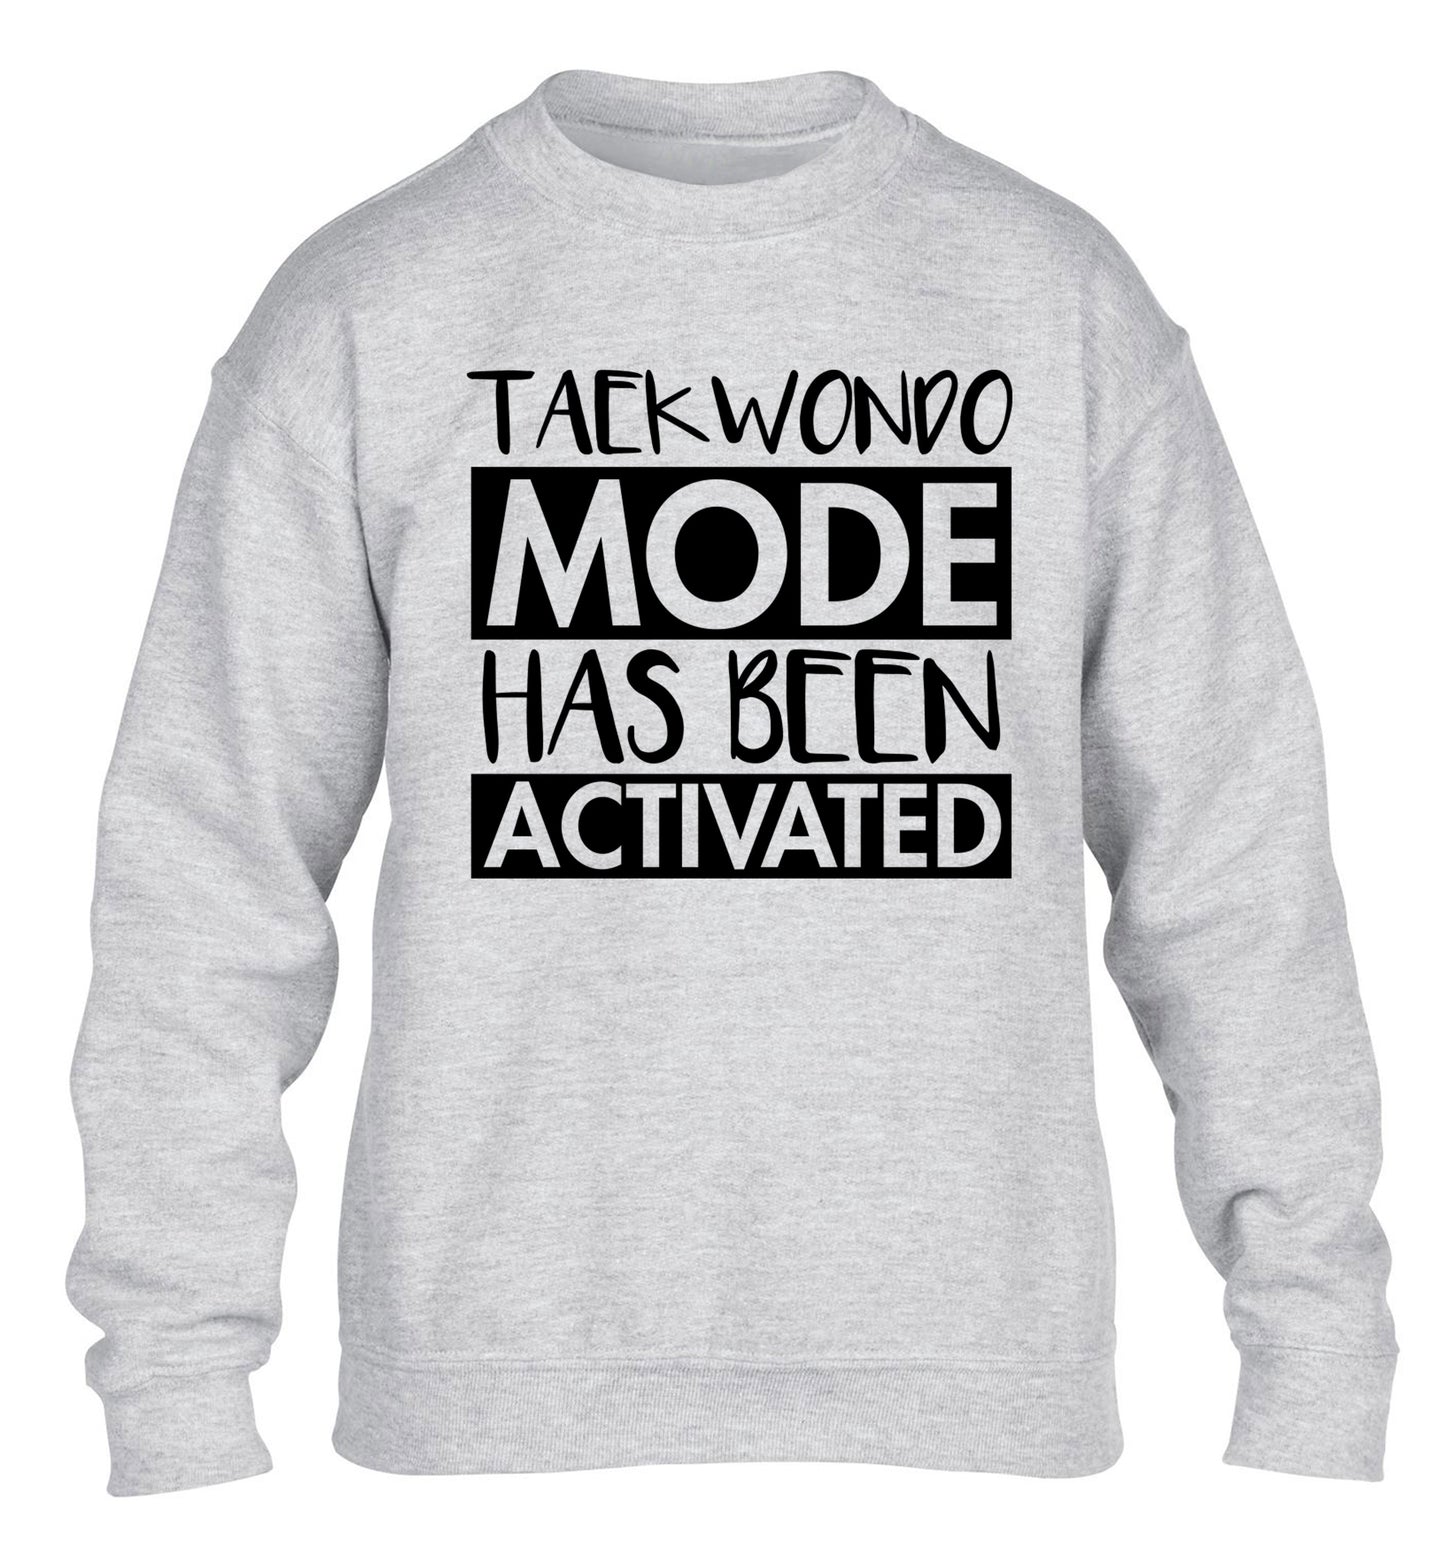 Taekwondo mode activated children's grey sweater 12-14 Years